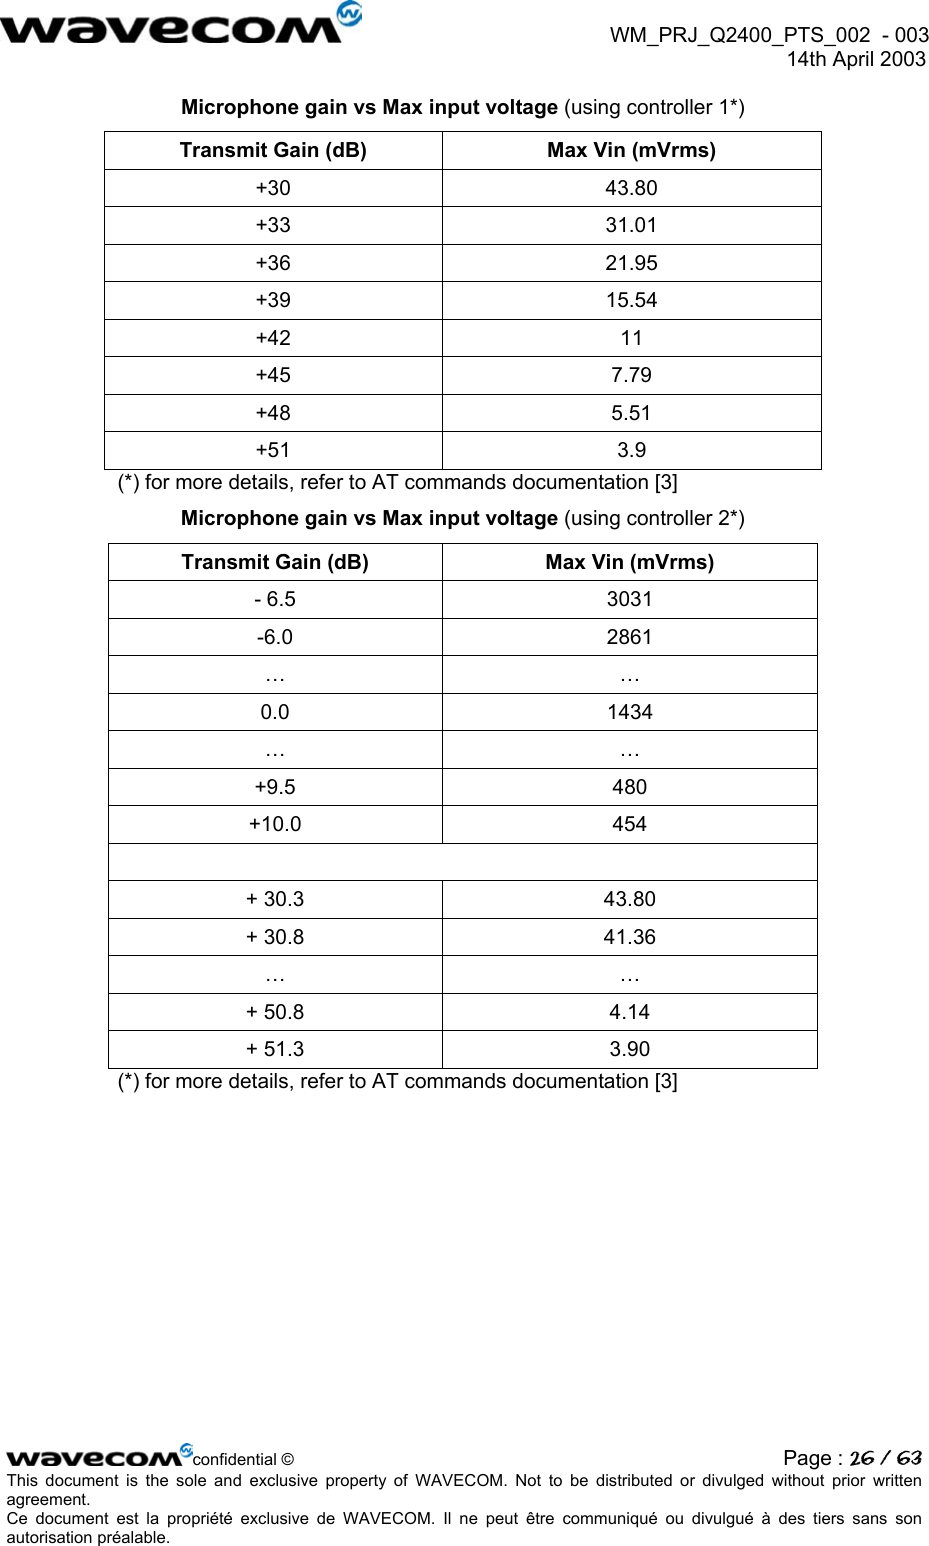  WM_PRJ_Q2400_PTS_002  - 003  14th April 2003   Microphone gain vs Max input voltage (using controller 1*) Transmit Gain (dB)  Max Vin (mVrms) +30 43.80 +33 31.01 +36 21.95 +39 15.54 +42 11 +45 7.79 +48 5.51 +51 3.9 (*) for more details, refer to AT commands documentation [3] Microphone gain vs Max input voltage (using controller 2*) Transmit Gain (dB)  Max Vin (mVrms) - 6.5  3031 -6.0 2861 … … 0.0 1434 … … +9.5 480 +10.0 454  + 30.3  43.80 + 30.8  41.36 … … + 50.8  4.14 + 51.3  3.90 (*) for more details, refer to AT commands documentation [3] confidential © Page : 26 / 63This document is the sole and exclusive property of WAVECOM. Not to be distributed or divulged without prior written agreement.  Ce document est la propriété exclusive de WAVECOM. Il ne peut être communiqué ou divulgué à des tiers sans son autorisation préalable.  